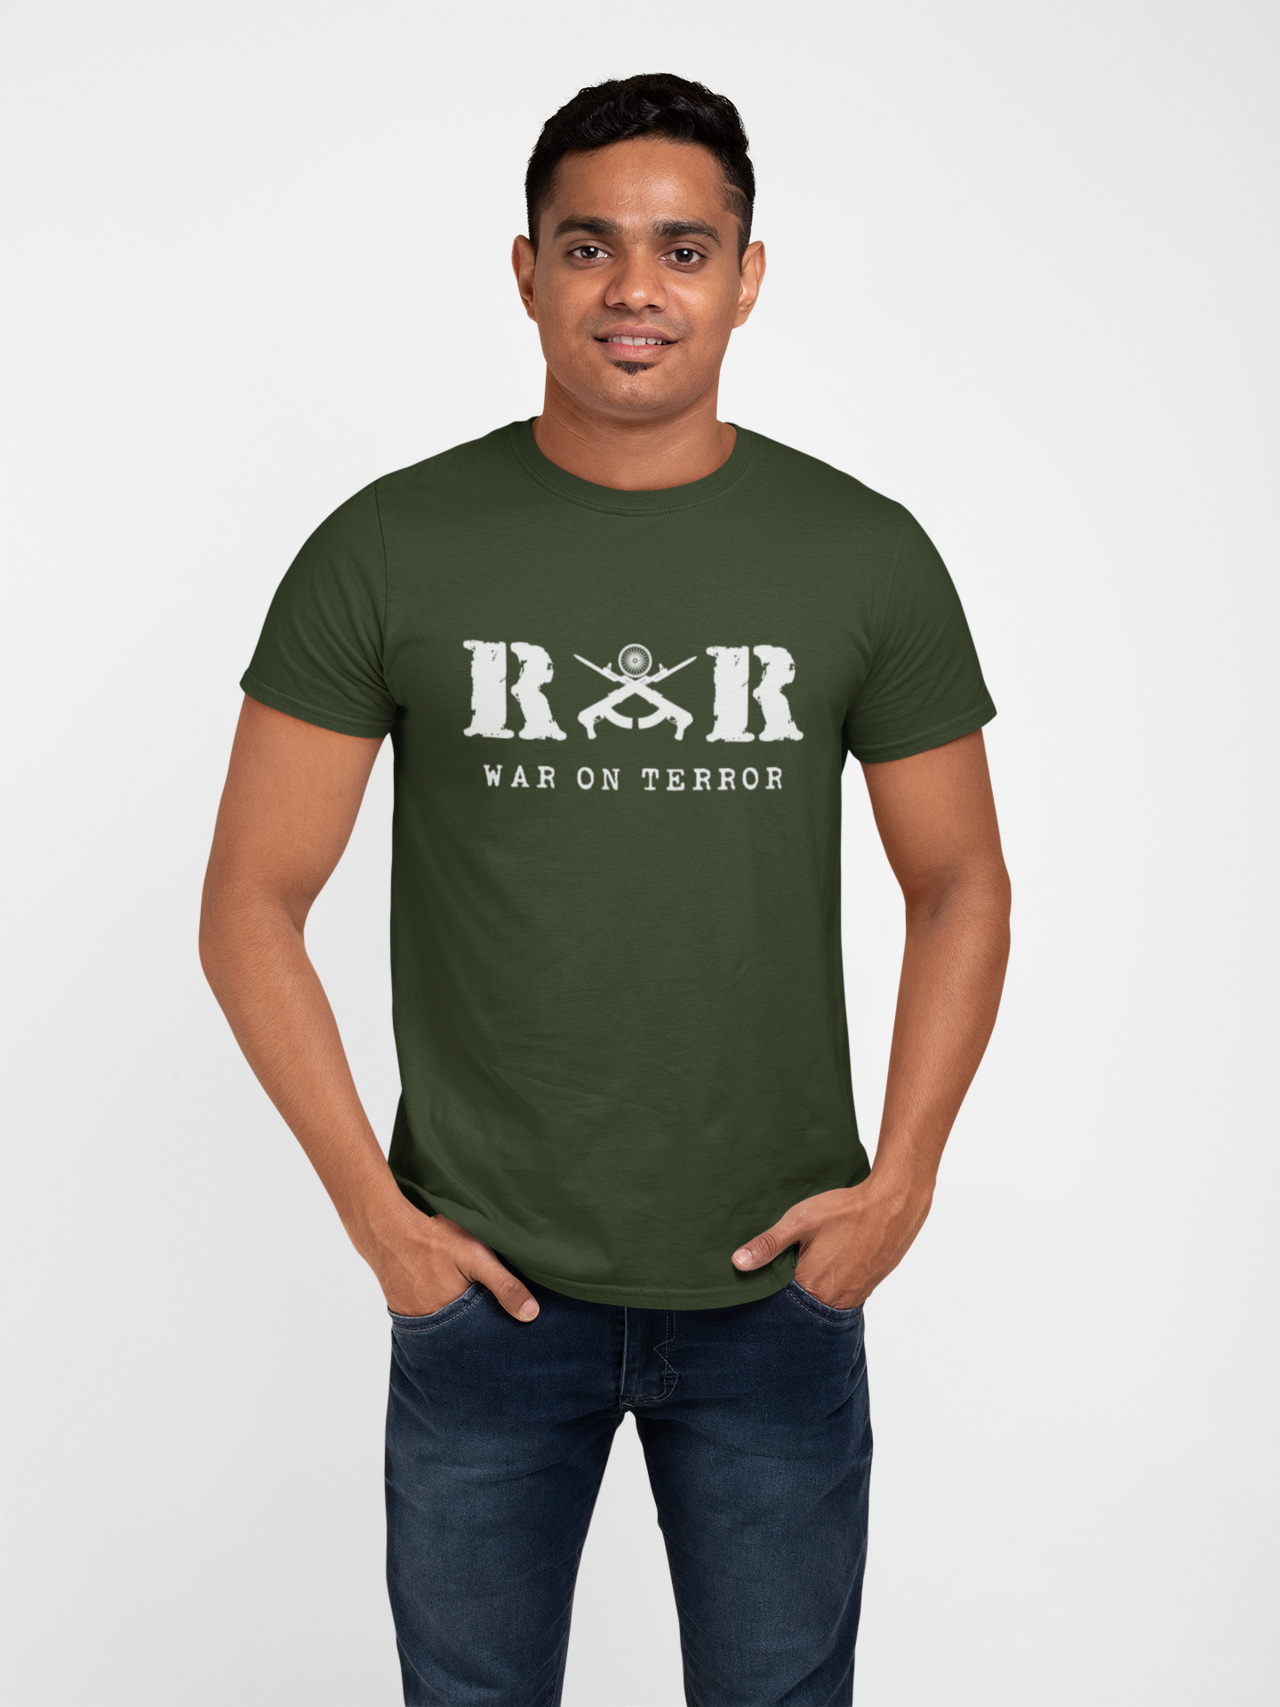 Rashtriya Rifles T-shirt - RR War on Terror ( Men)